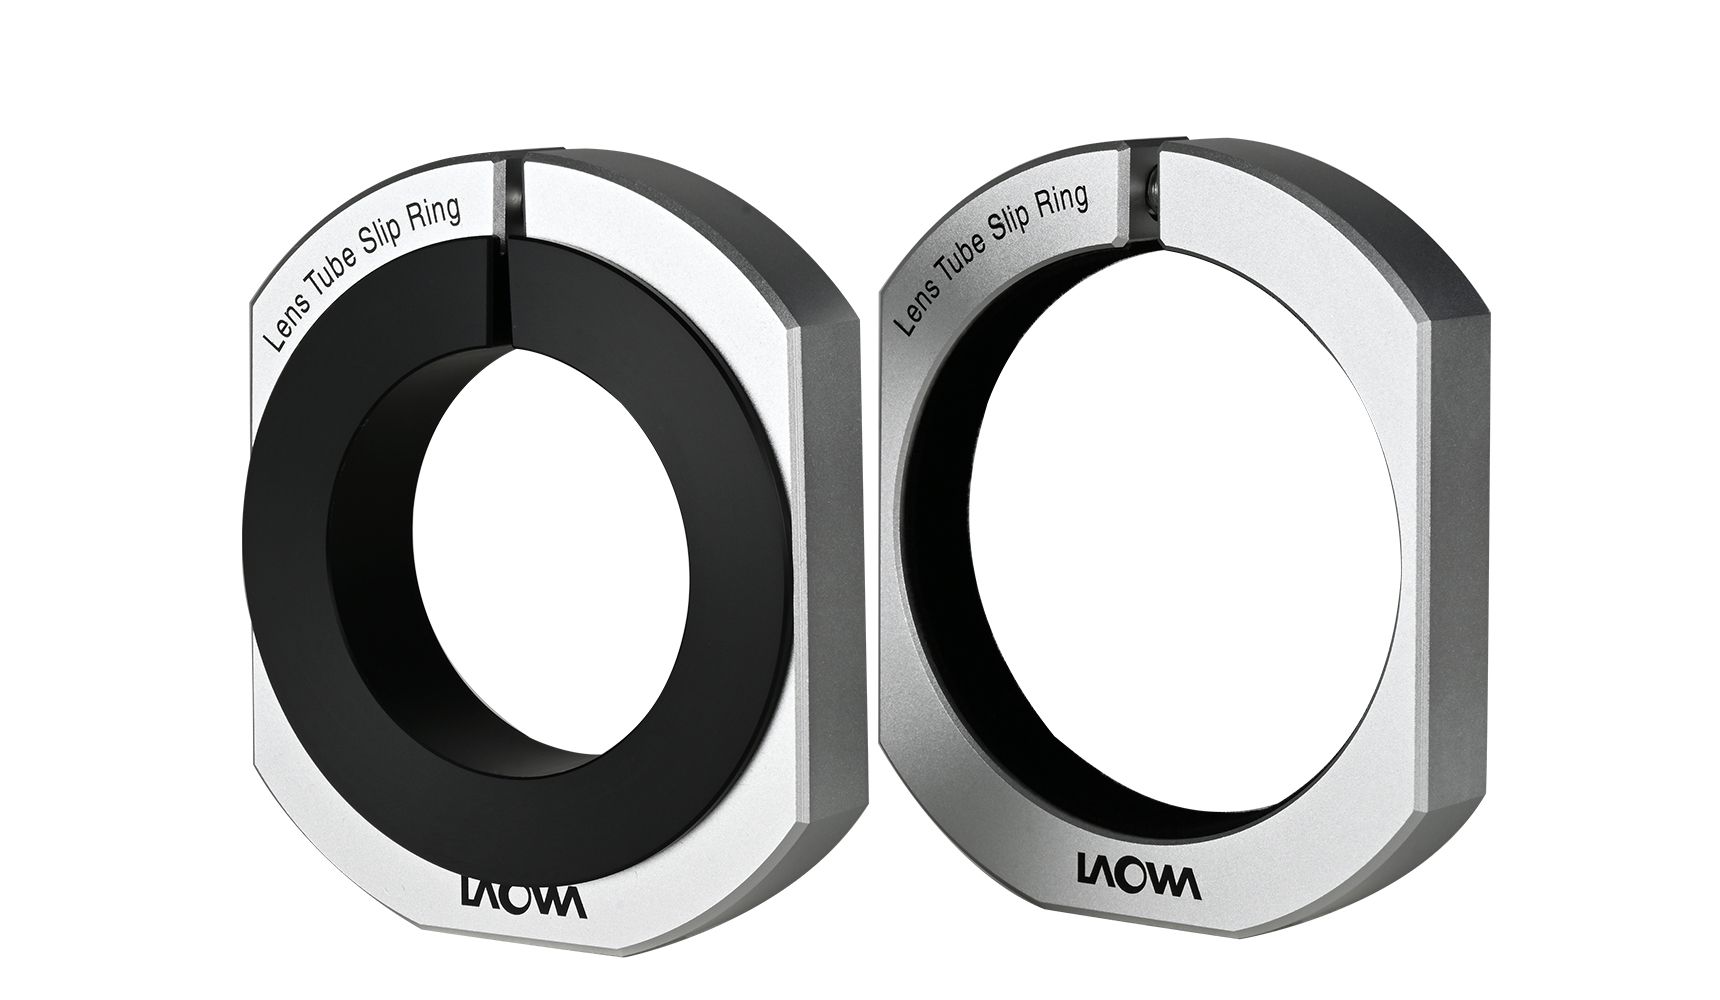 LAOWA - VEAURING - Lens Tube Slip Ring for Aurogon